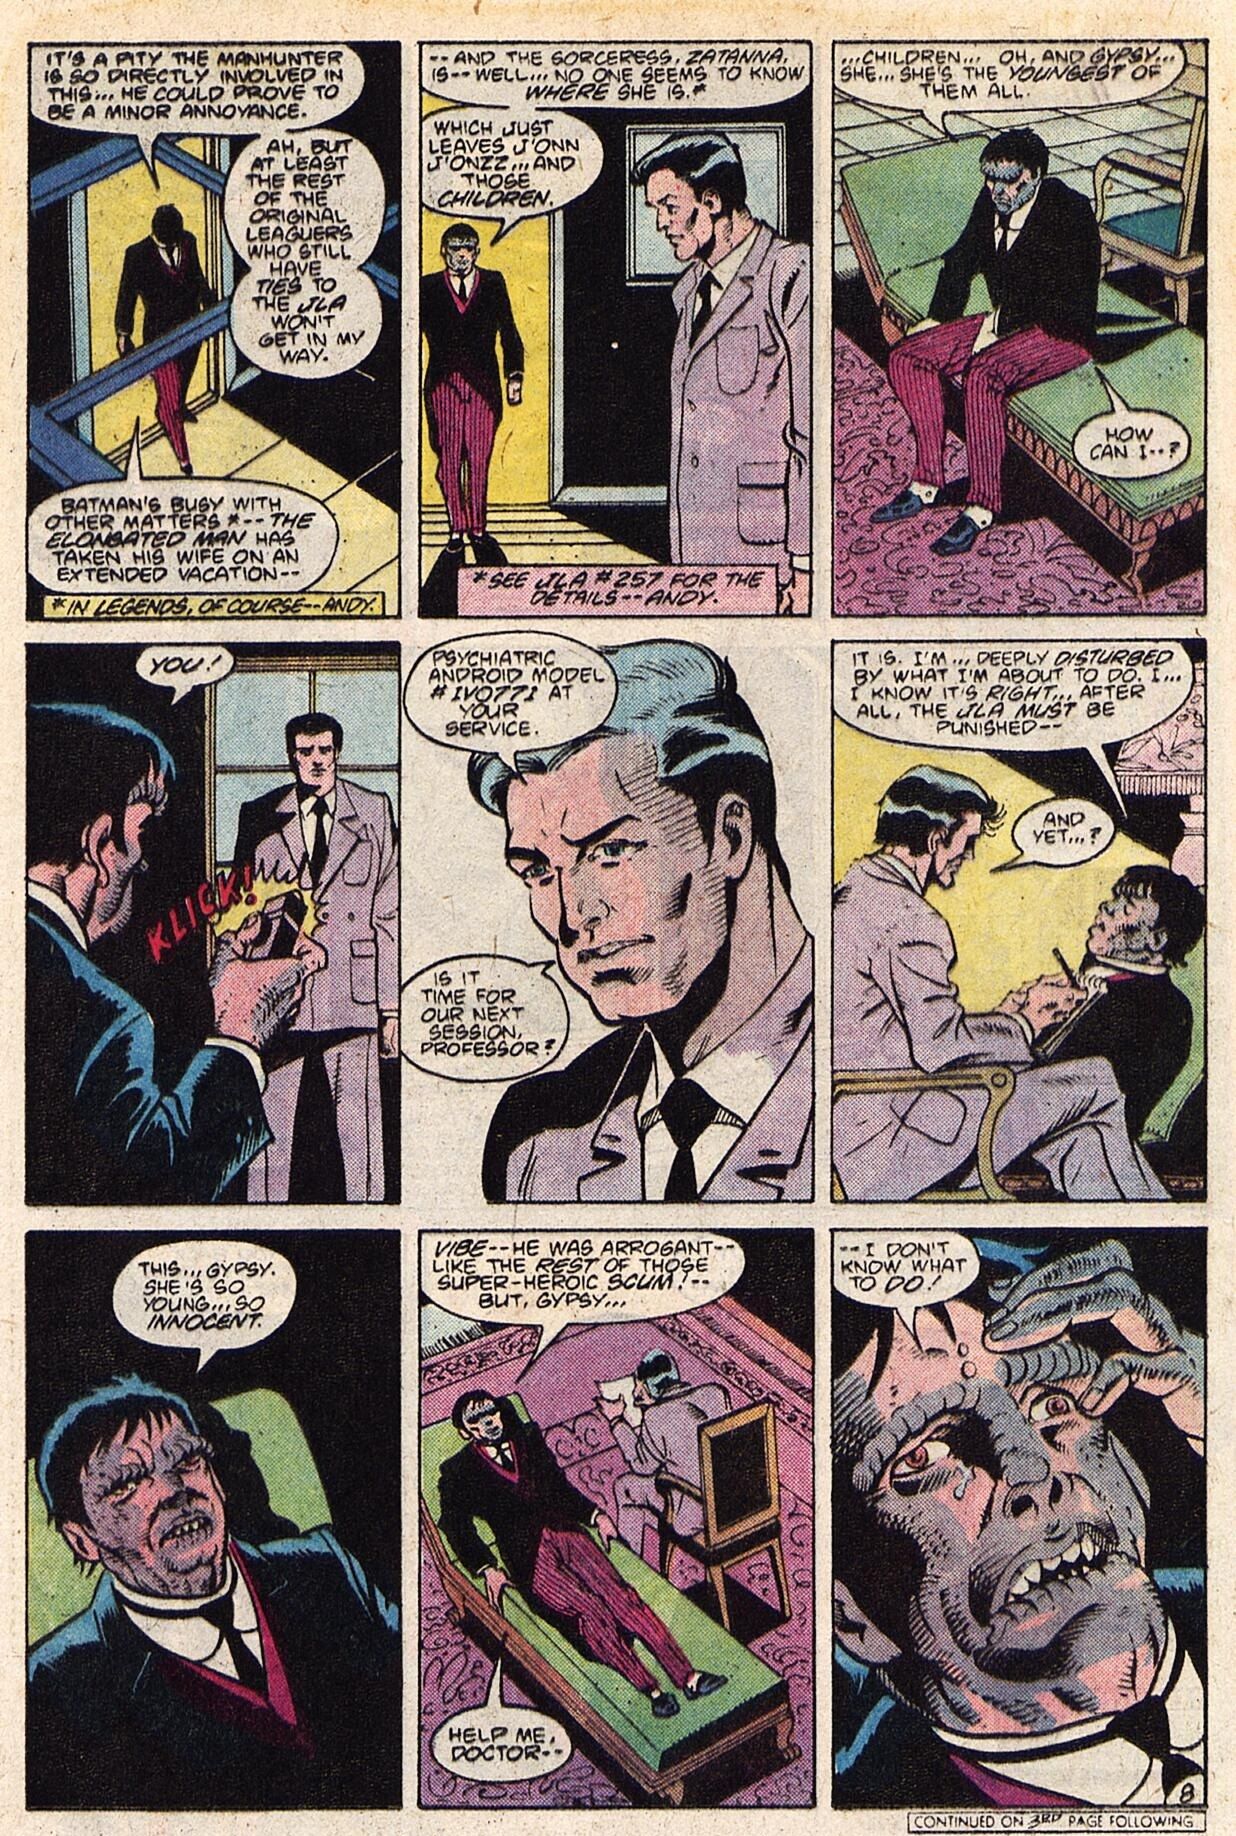 Какова была тайная причина, по которой Бэтмен воссоединился с Лигой справедливости после кризиса?